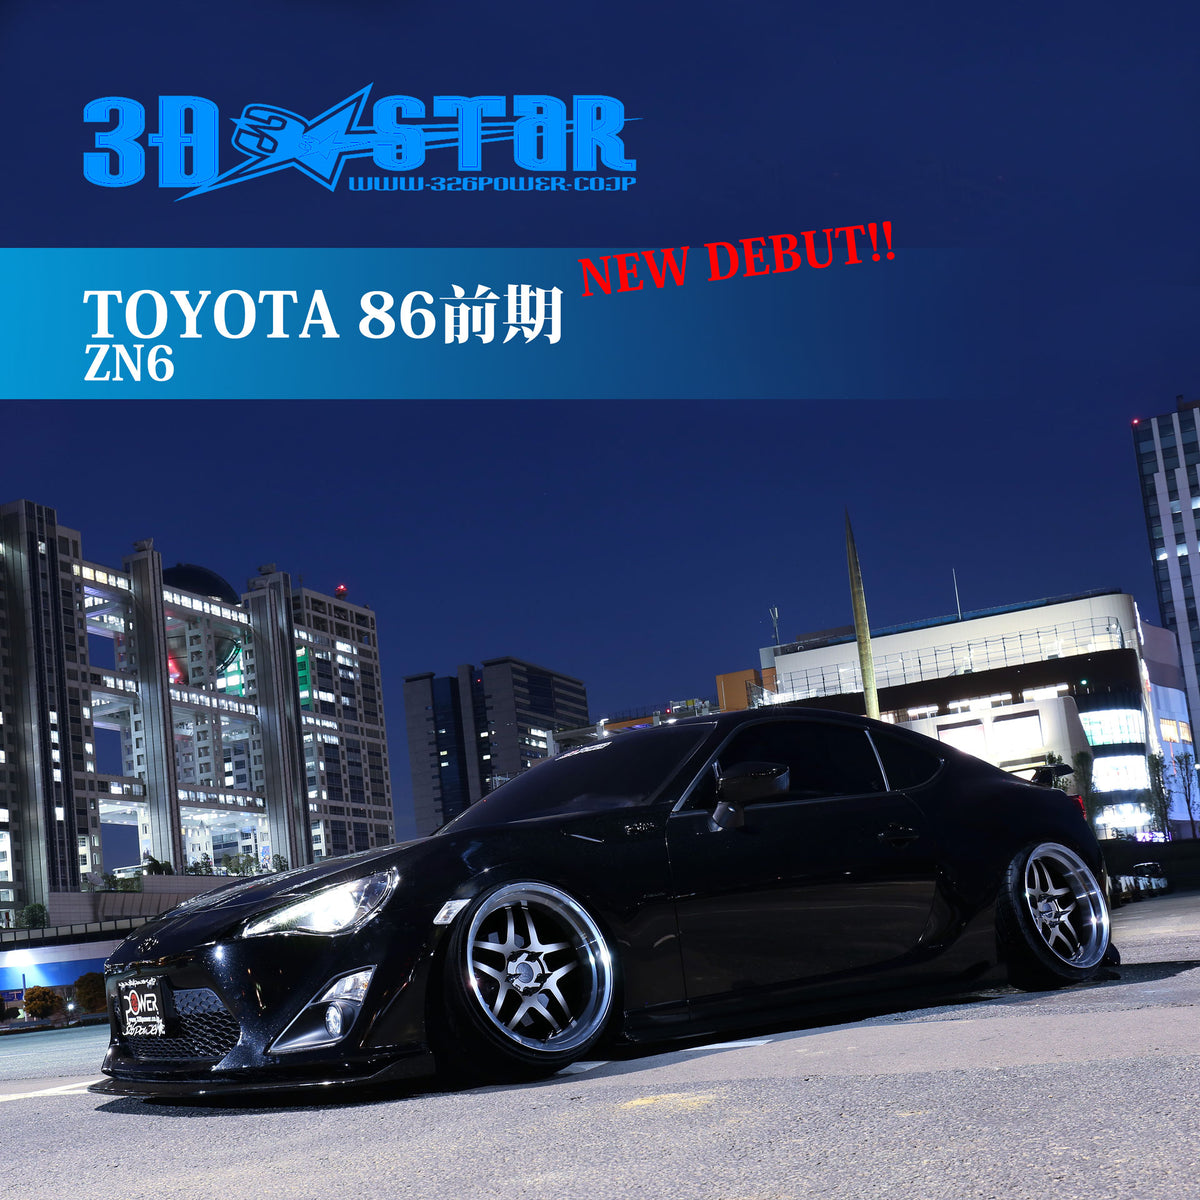 326POWER 3D☆STAR Lip Kit for Toyota GT86 (Zenki model) — 326Power USA